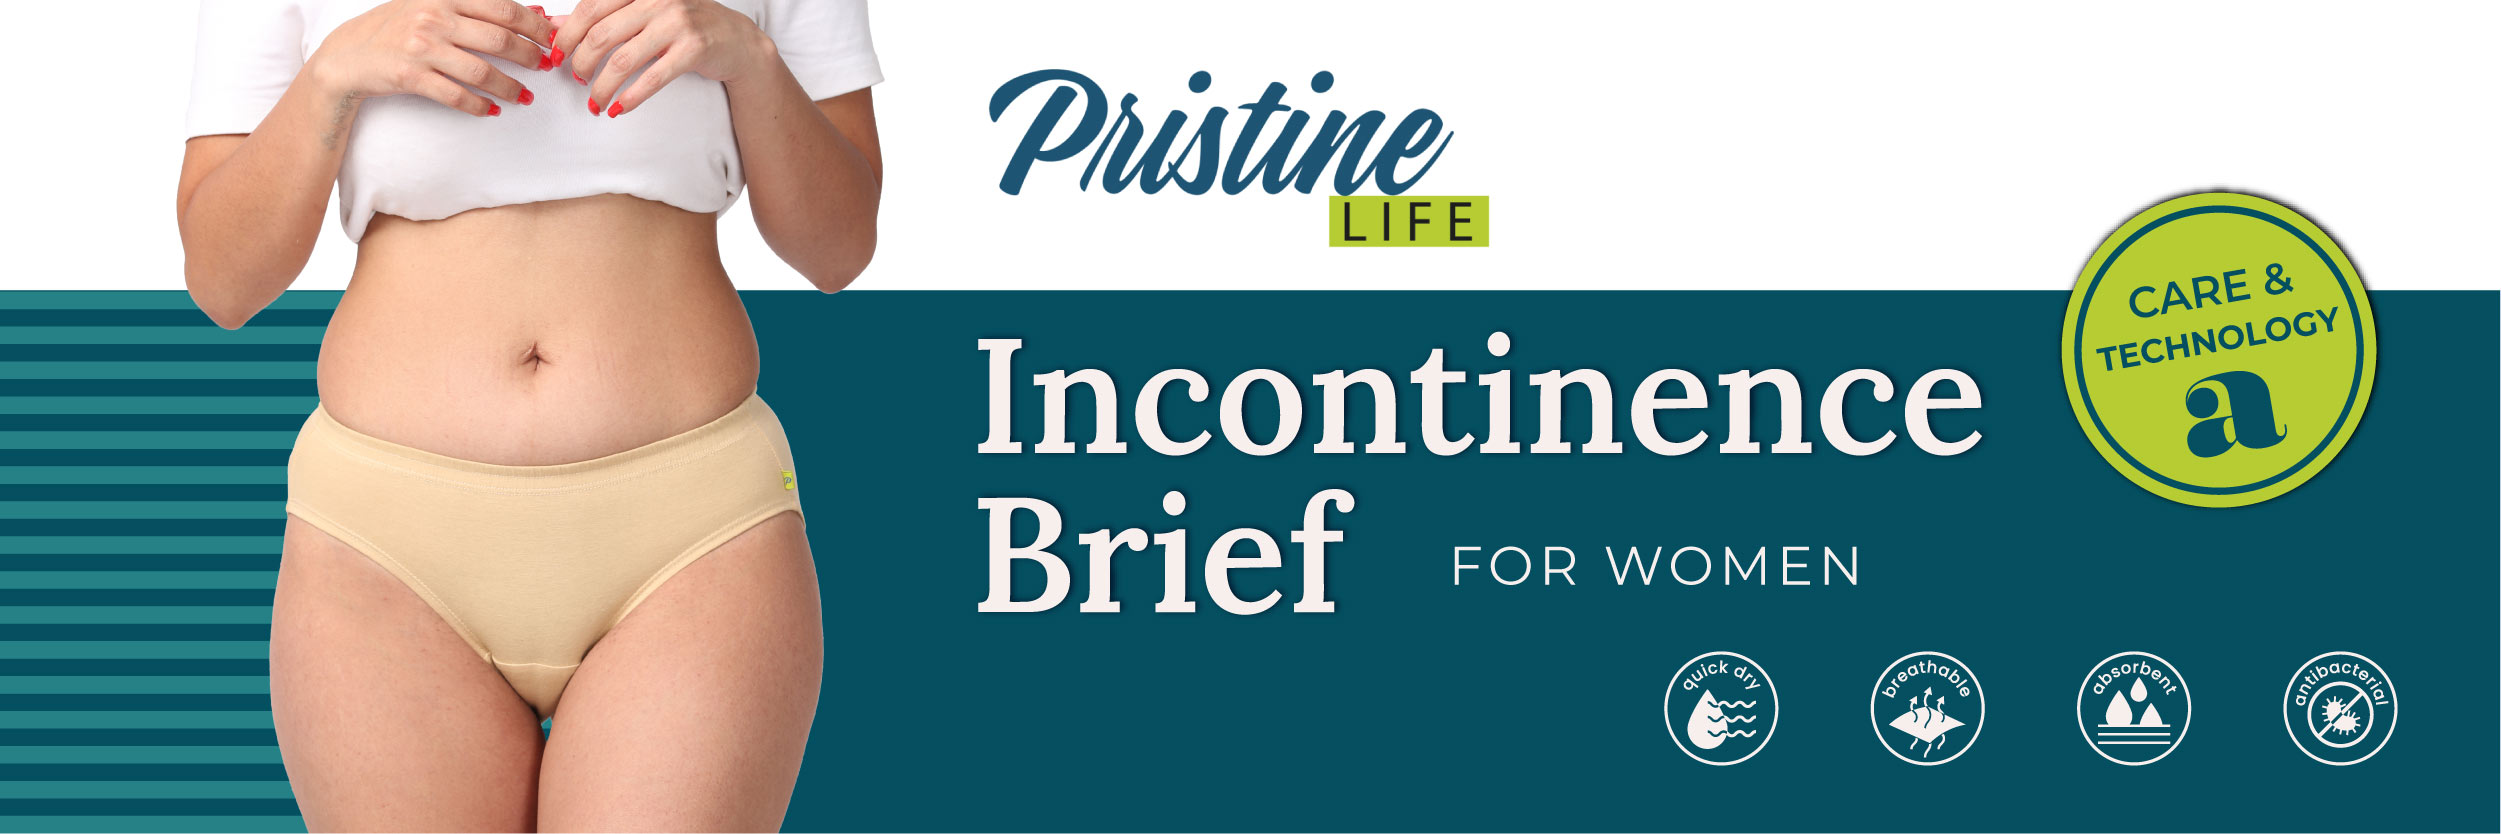 Pristine Life's Women Incontinence Underwear